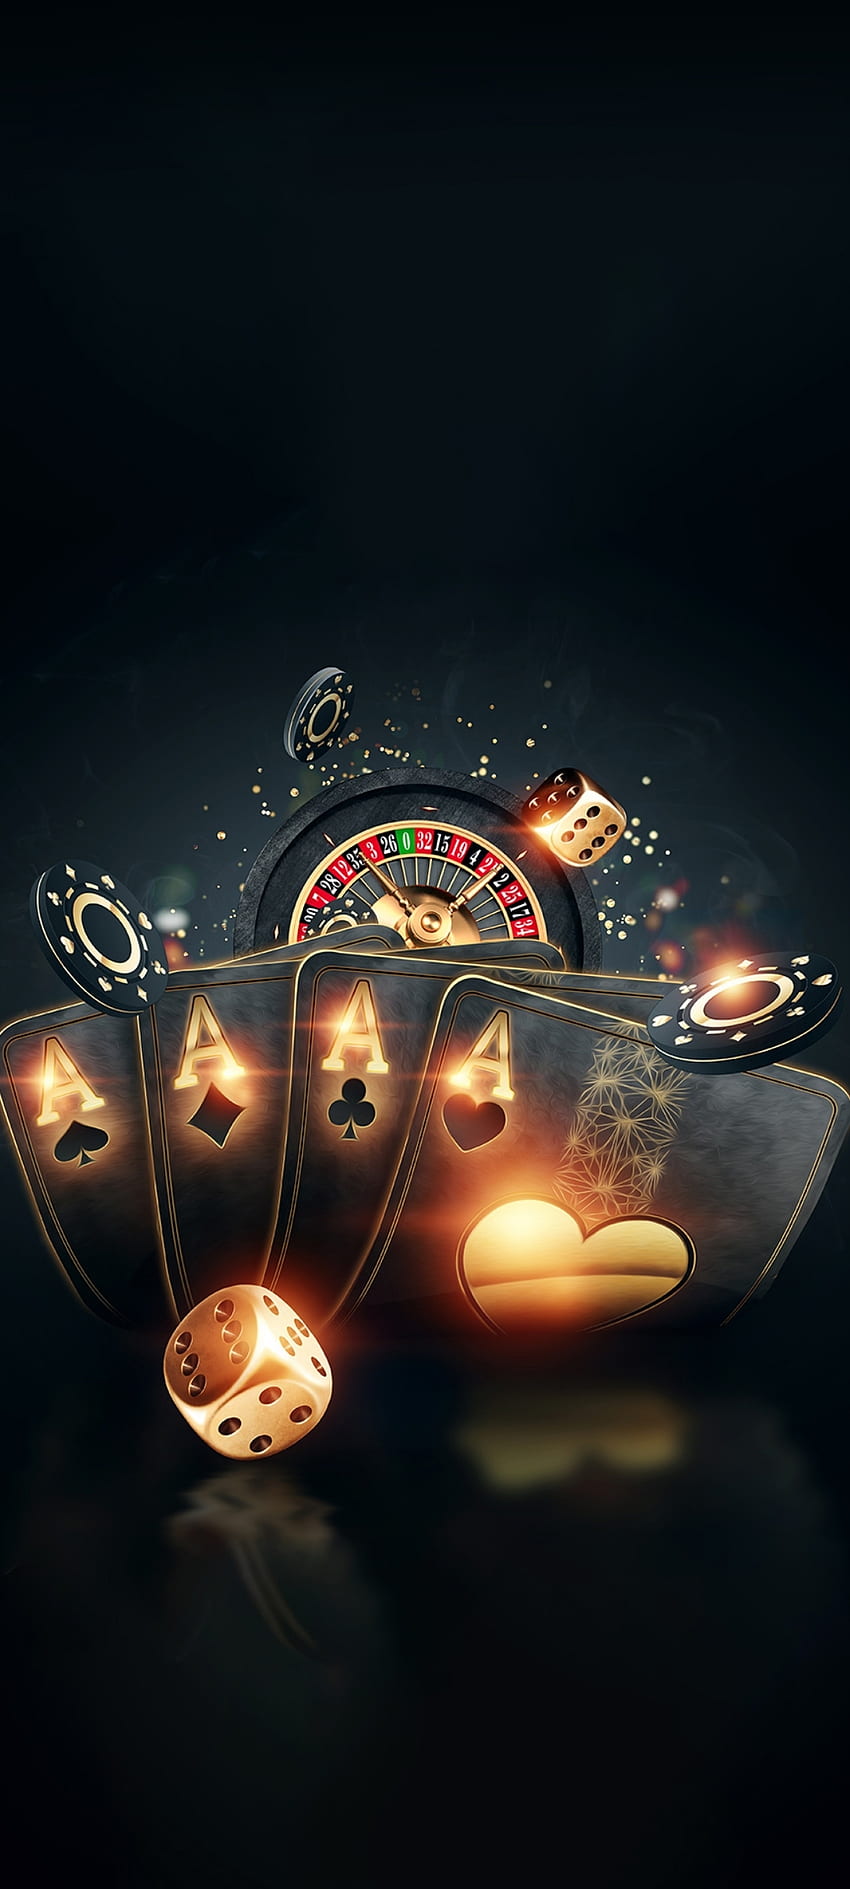 Casino_Games, pencahayaan otomotif, langit, cantik, Poker, Kemewahan, hitam, kartu wallpaper ponsel HD